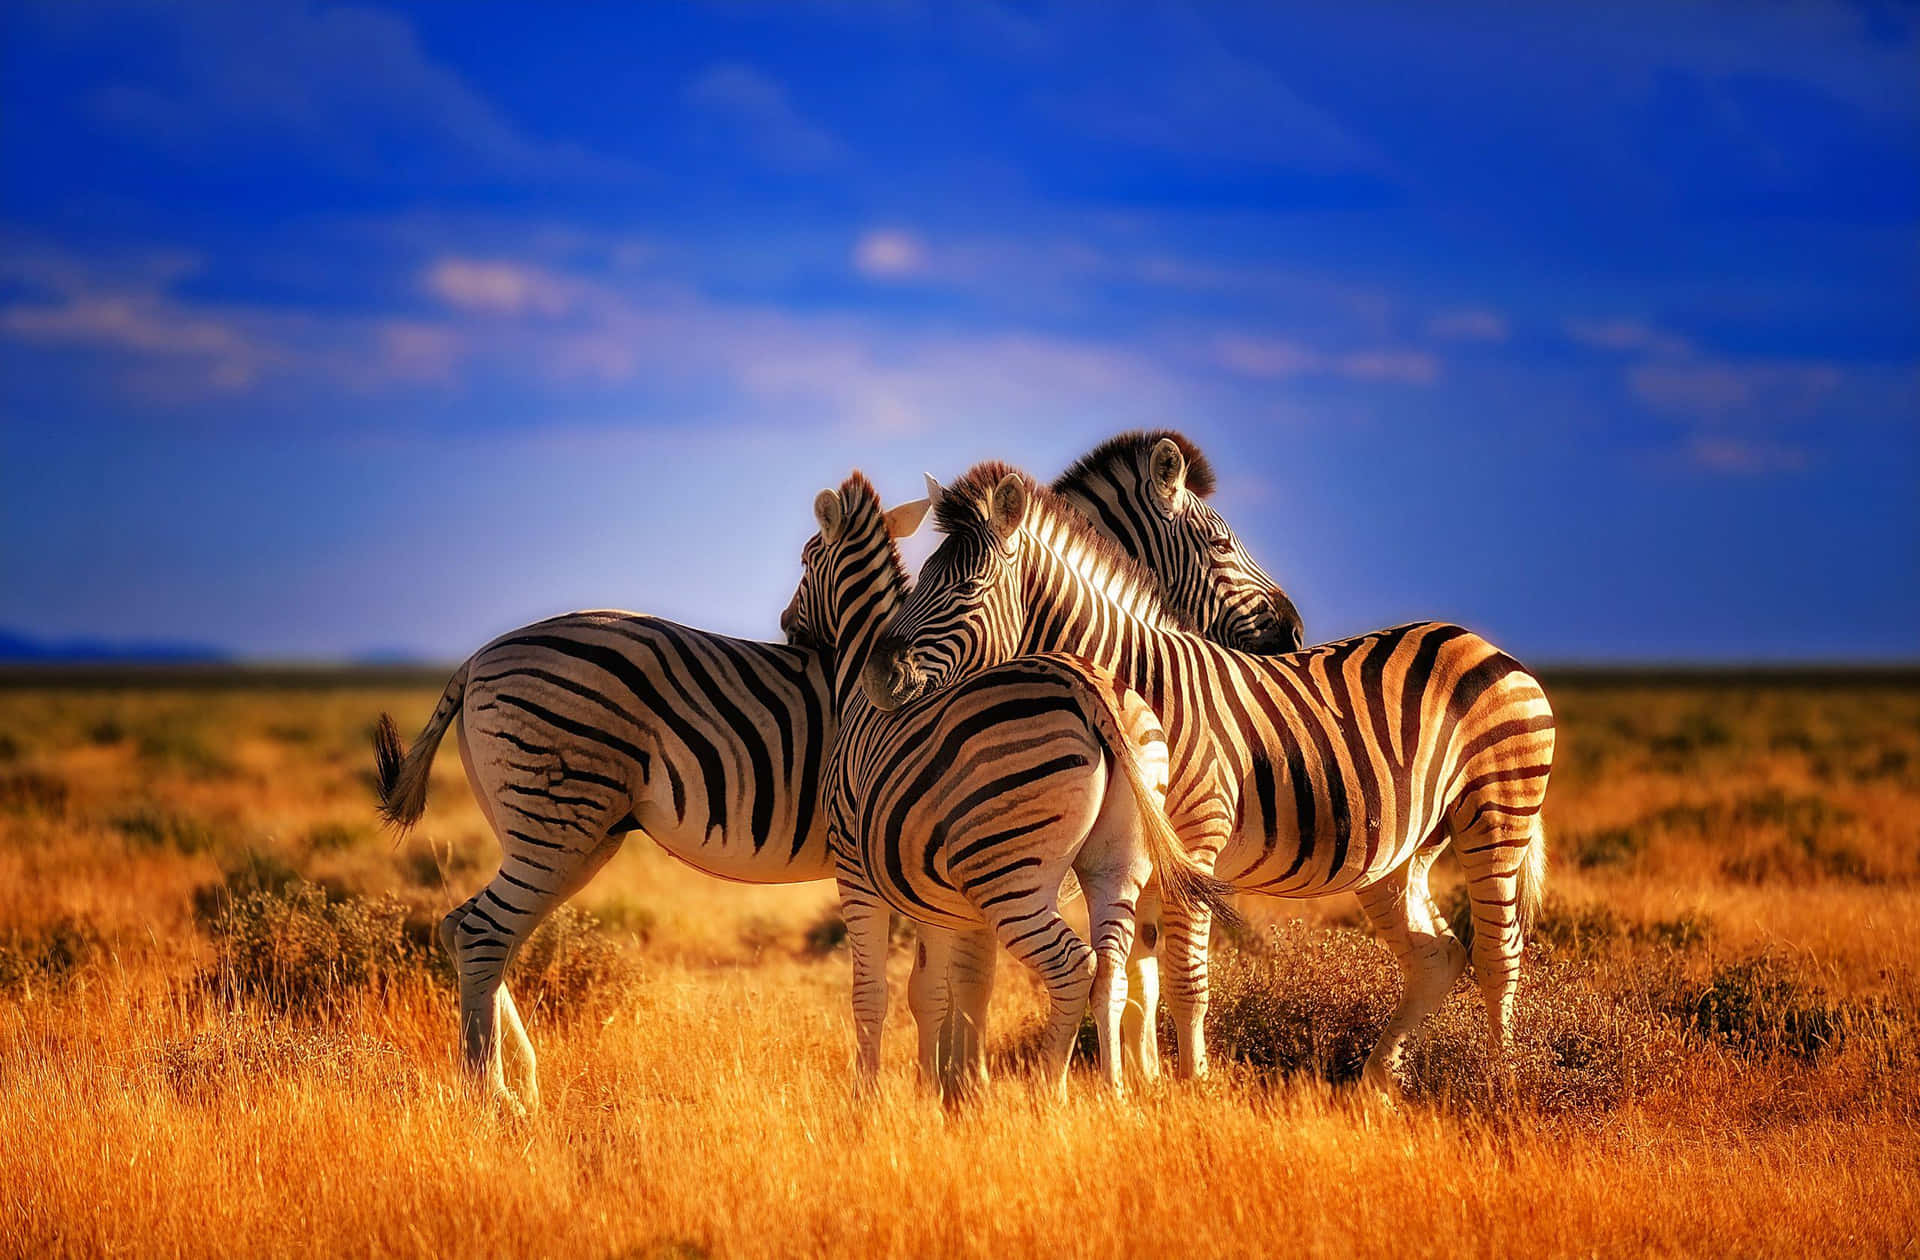 Envacker Zebra Poserar Med Vegetation I Bakgrunden.